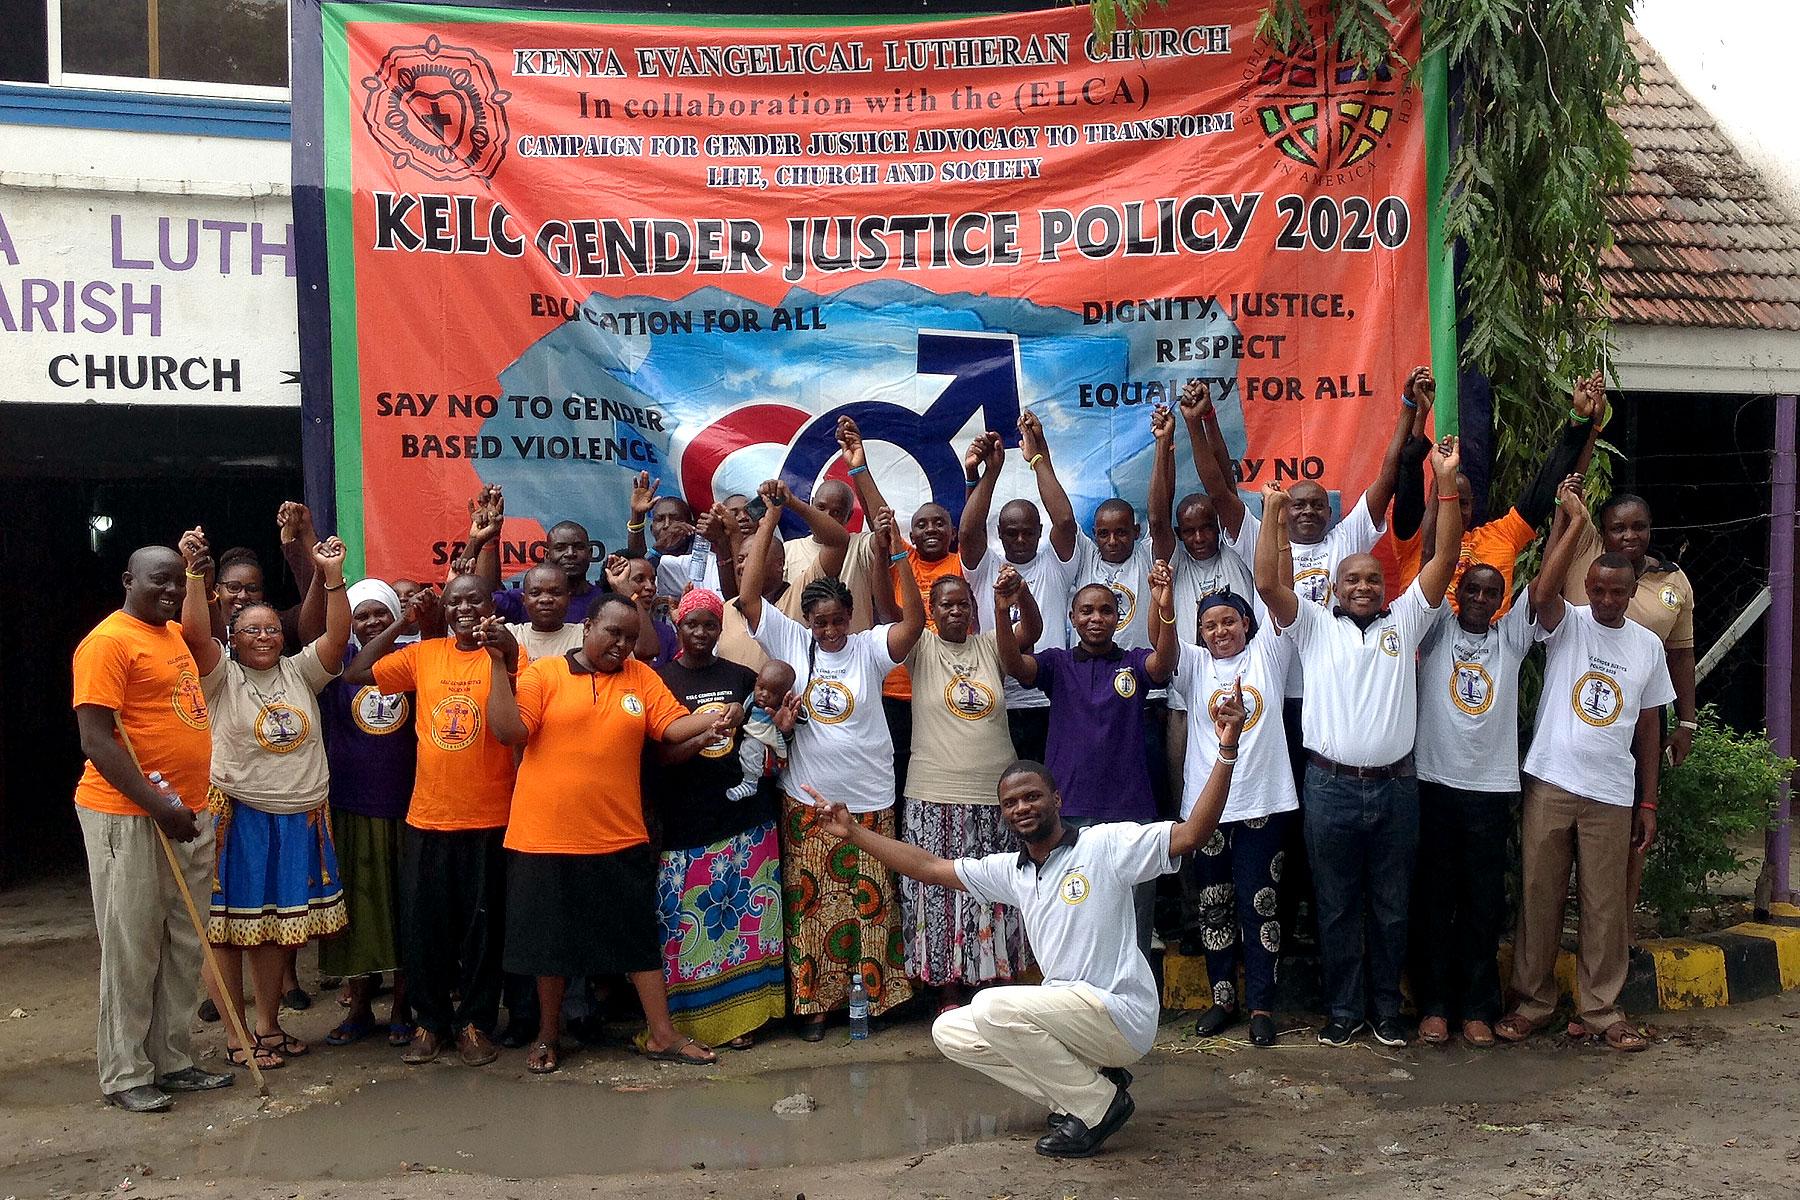 Workshop und Kampagne für die Gleichstellung der Geschlechter in Kenia. Foto: LWB/ALCINET